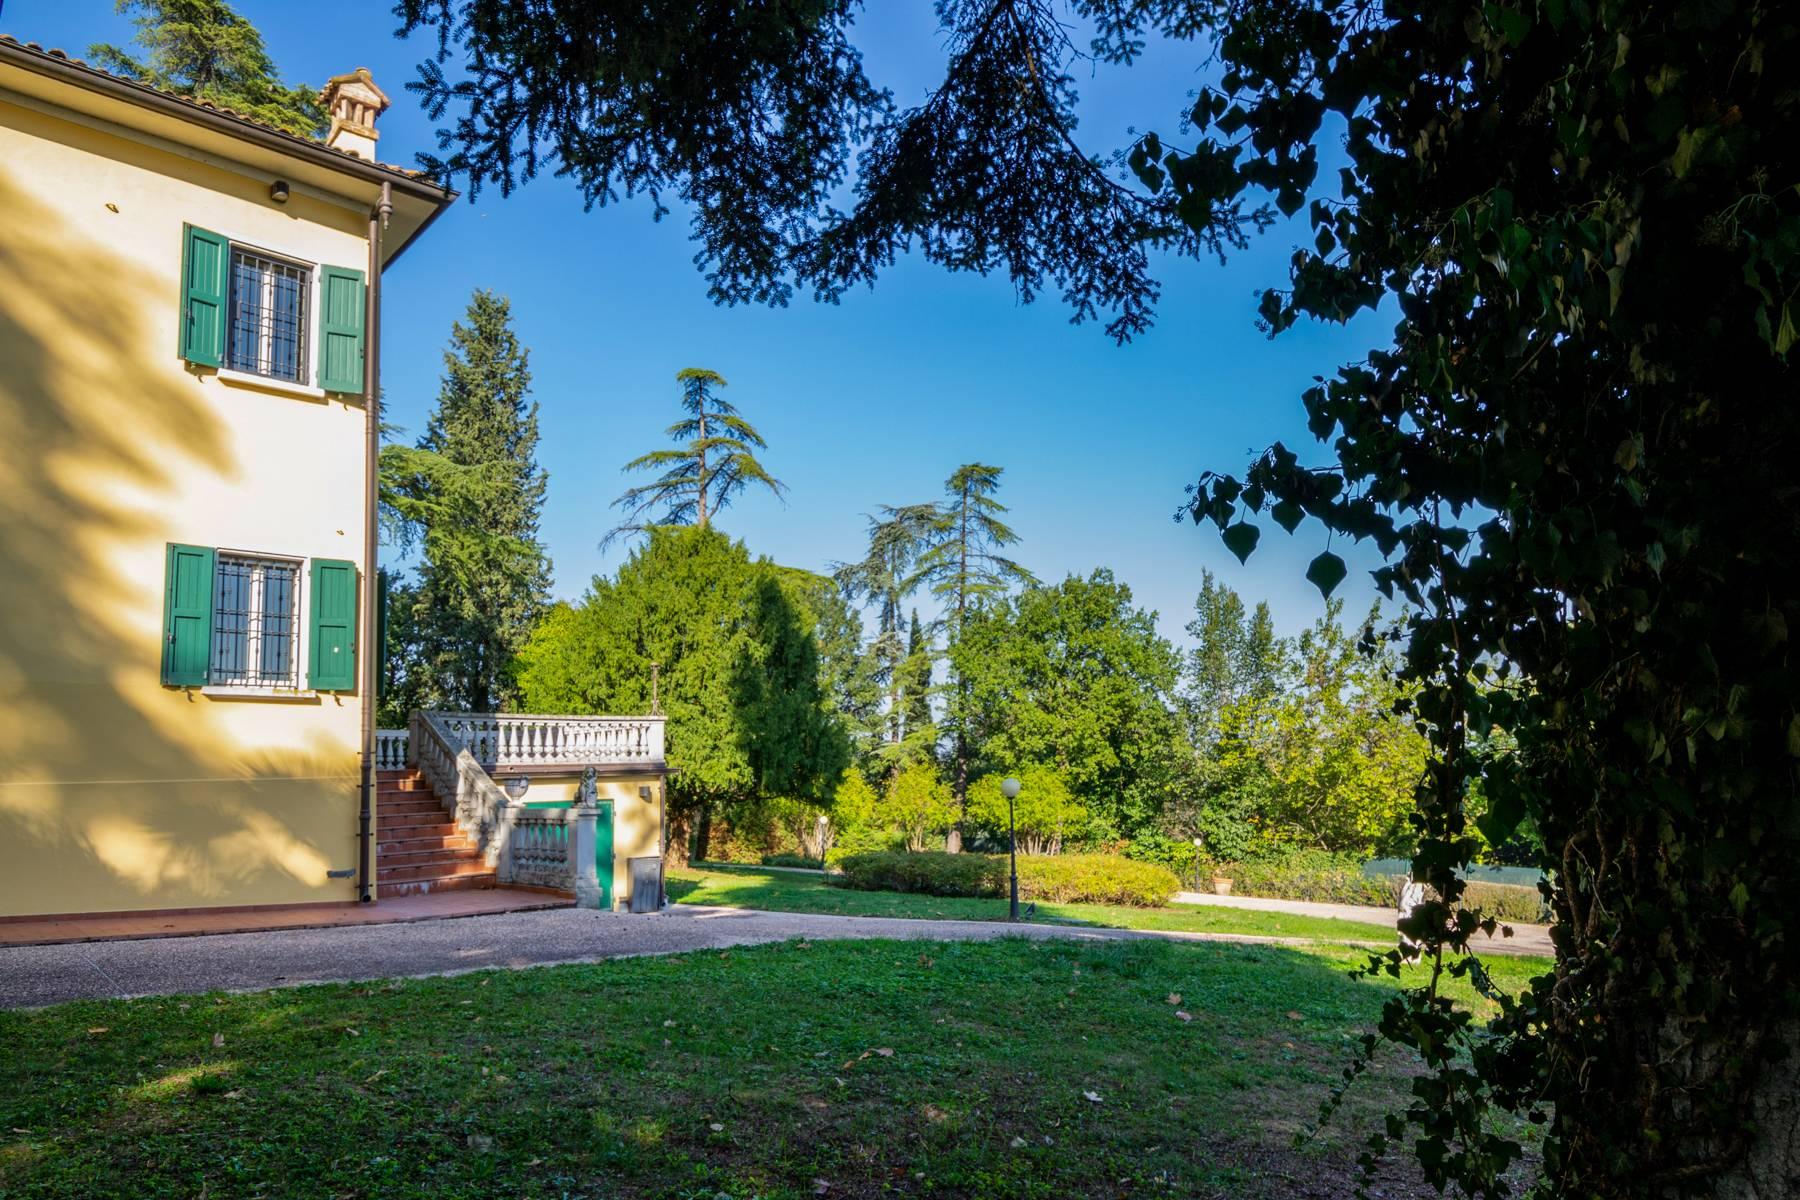 Historische Villa vom Grünen umgeben - 4